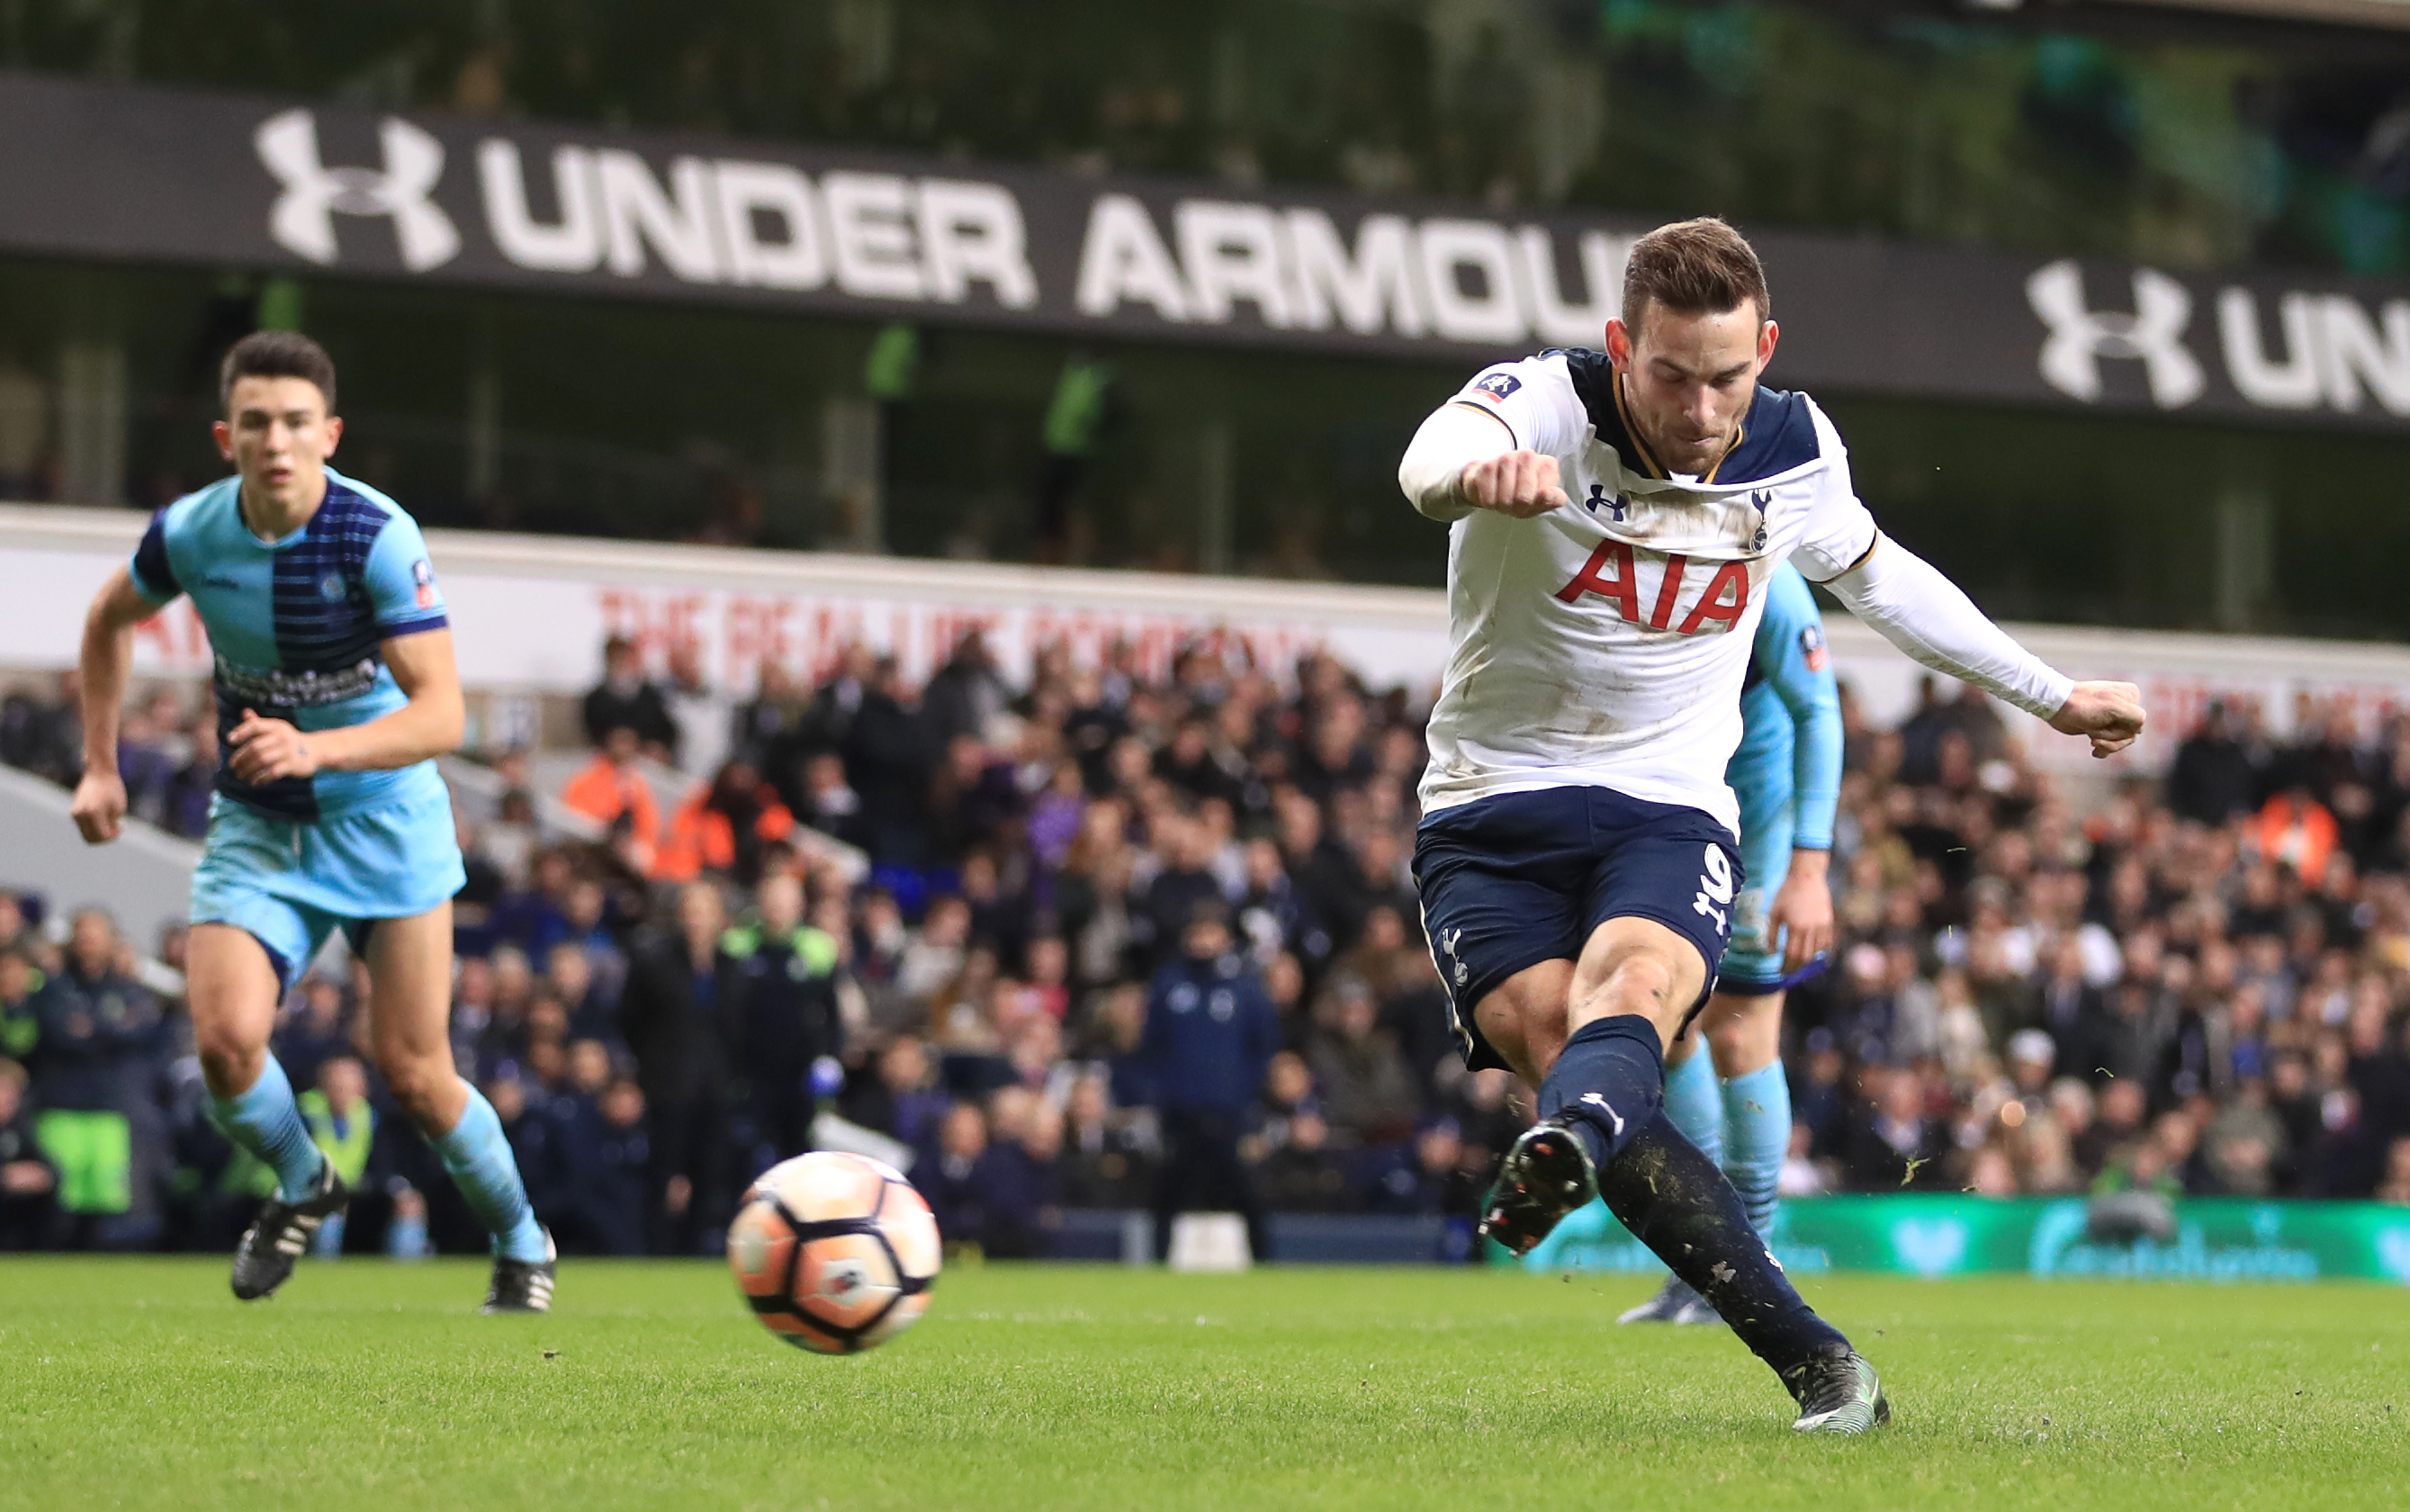 Tottenham Hotspur's Vincent Janssen scores a goal